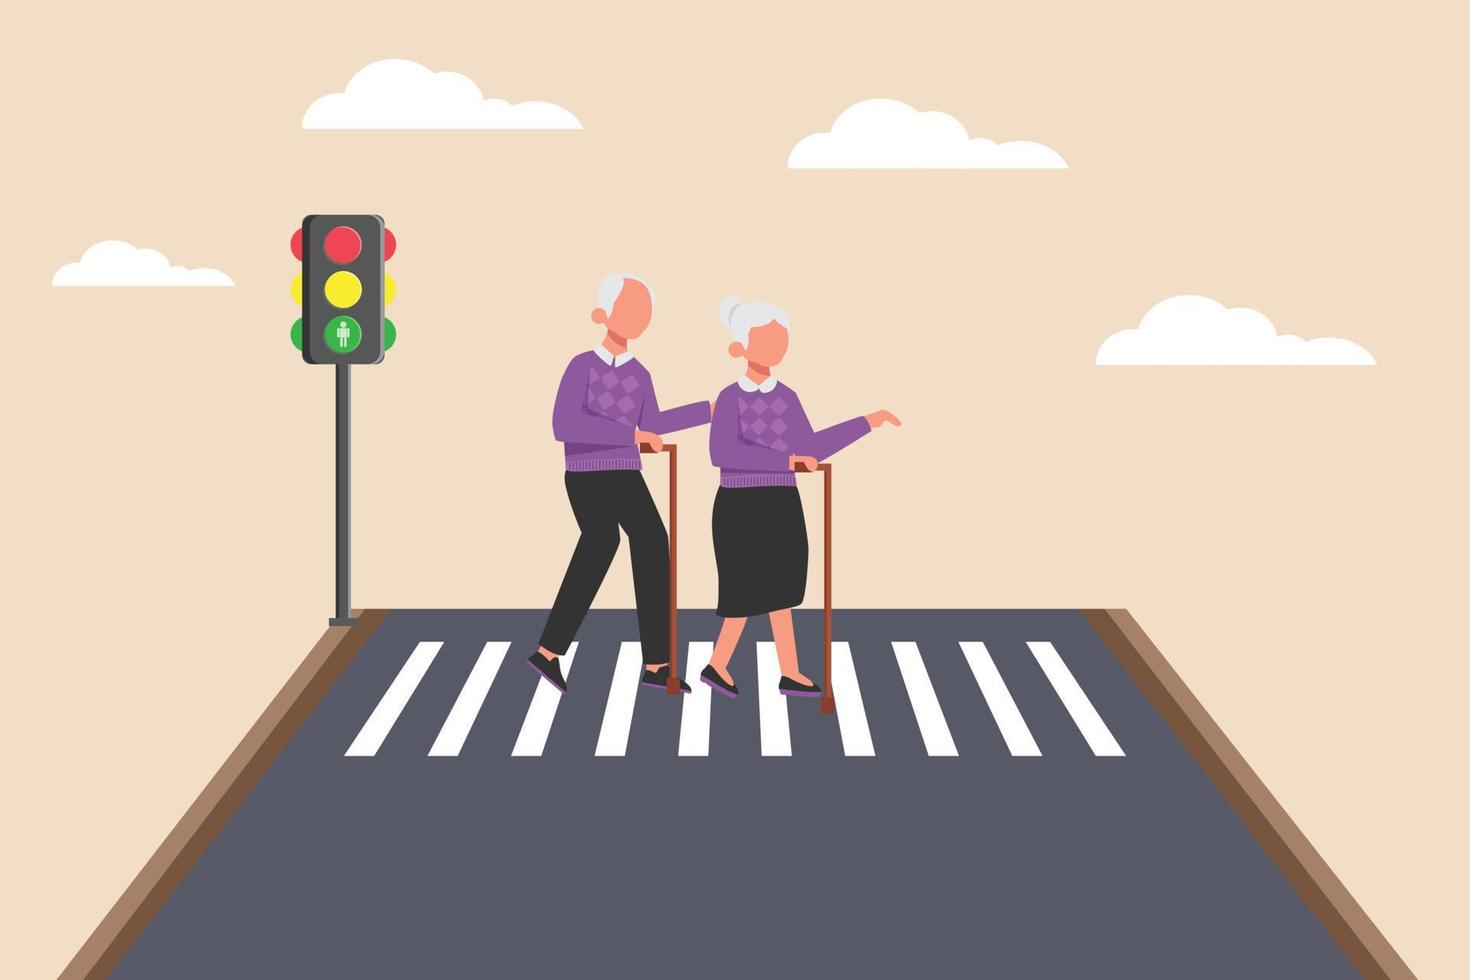 les grands-parents marchent sur une croix zébrée dans la rue. concept de route ou de trafic. illustration de vecteur plat isolé.